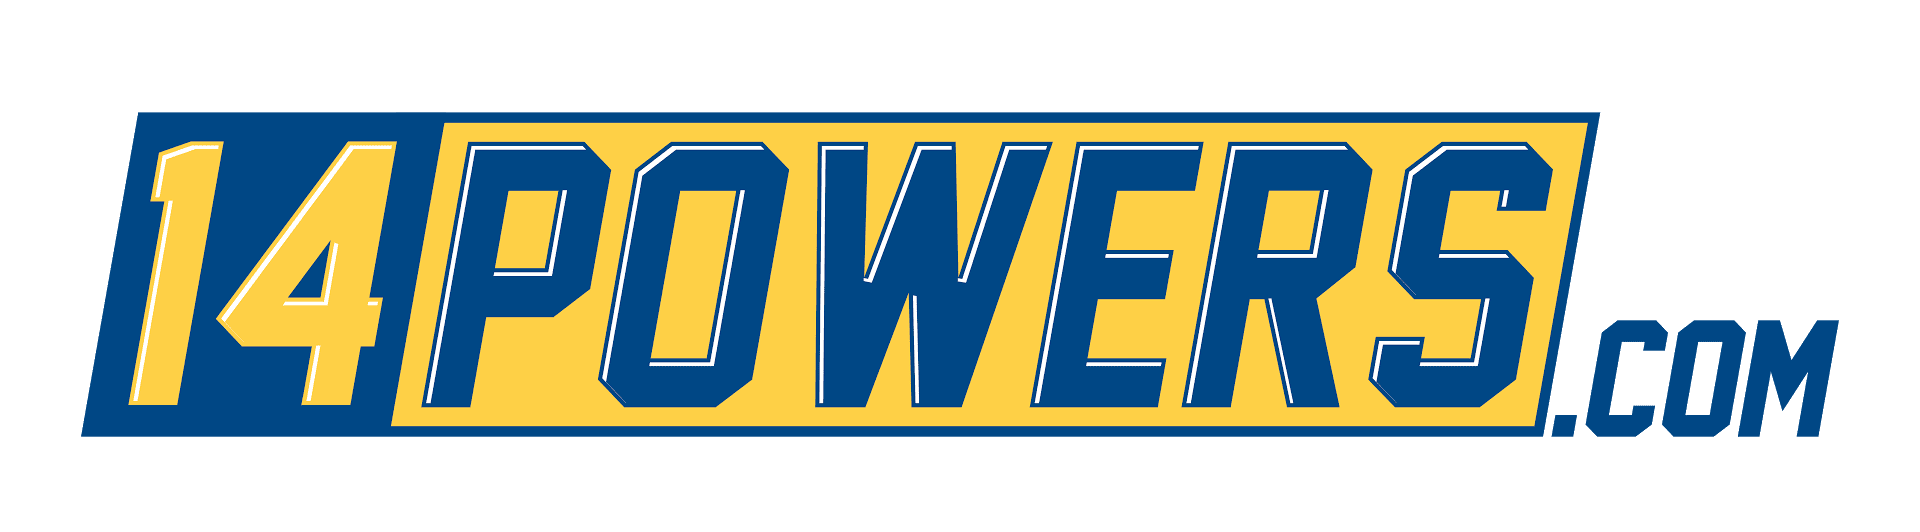 14Powers.com logo